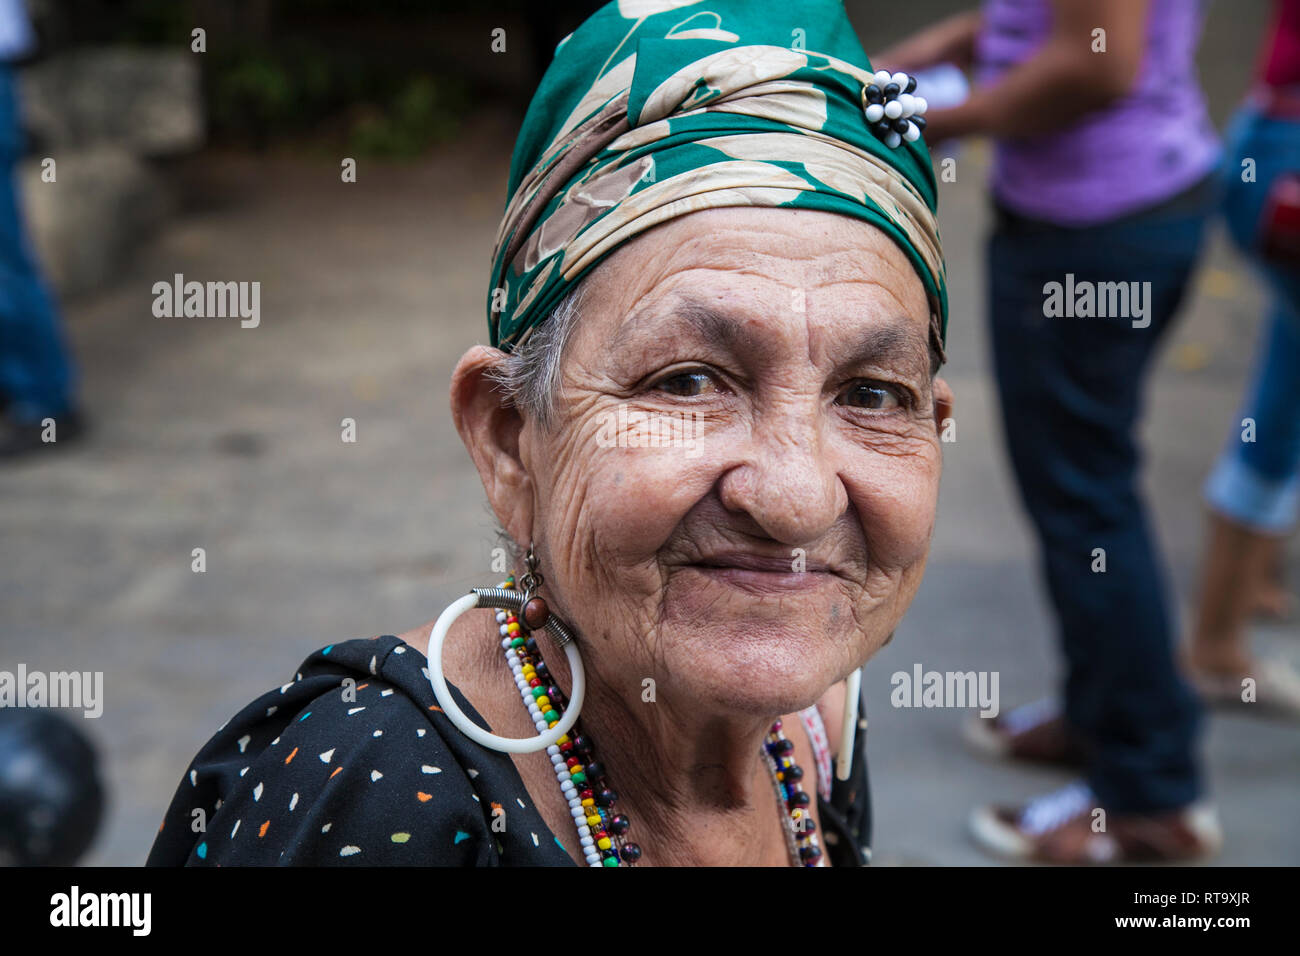 L'Avana, Cuba - 24 Gennaio 2013: Ritratti del popolo cubano in abiti tradizionali. Una donna anziana con il velo di colore verde. Foto Stock